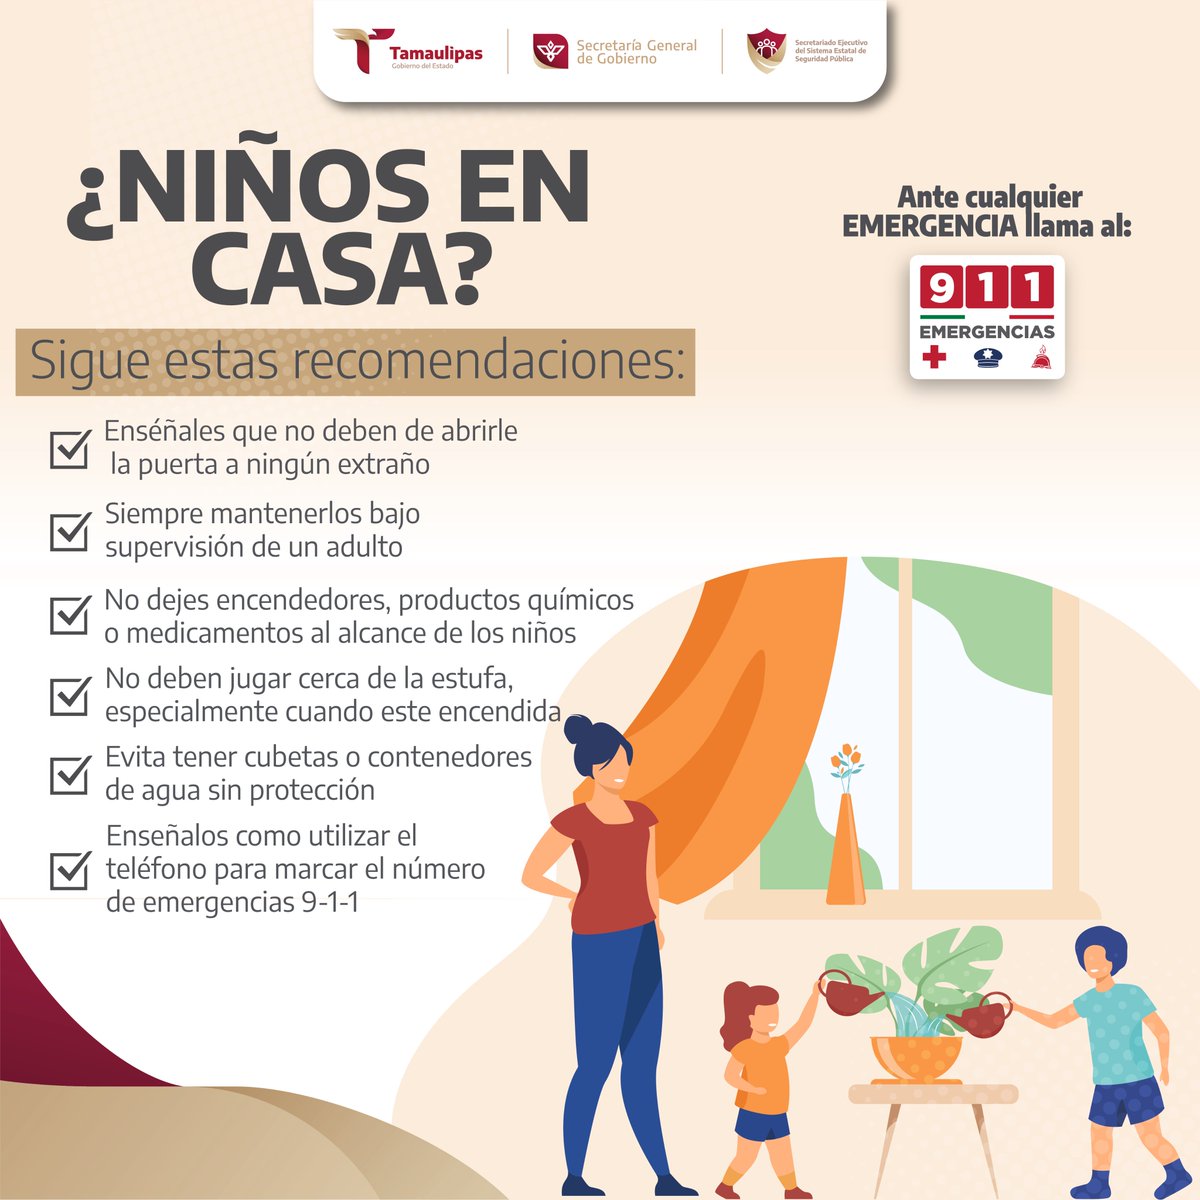 Te compartimos las siguientes recomendaciones para cuidar de los menores del hogar. 🏠

#ConfíaEnEl911